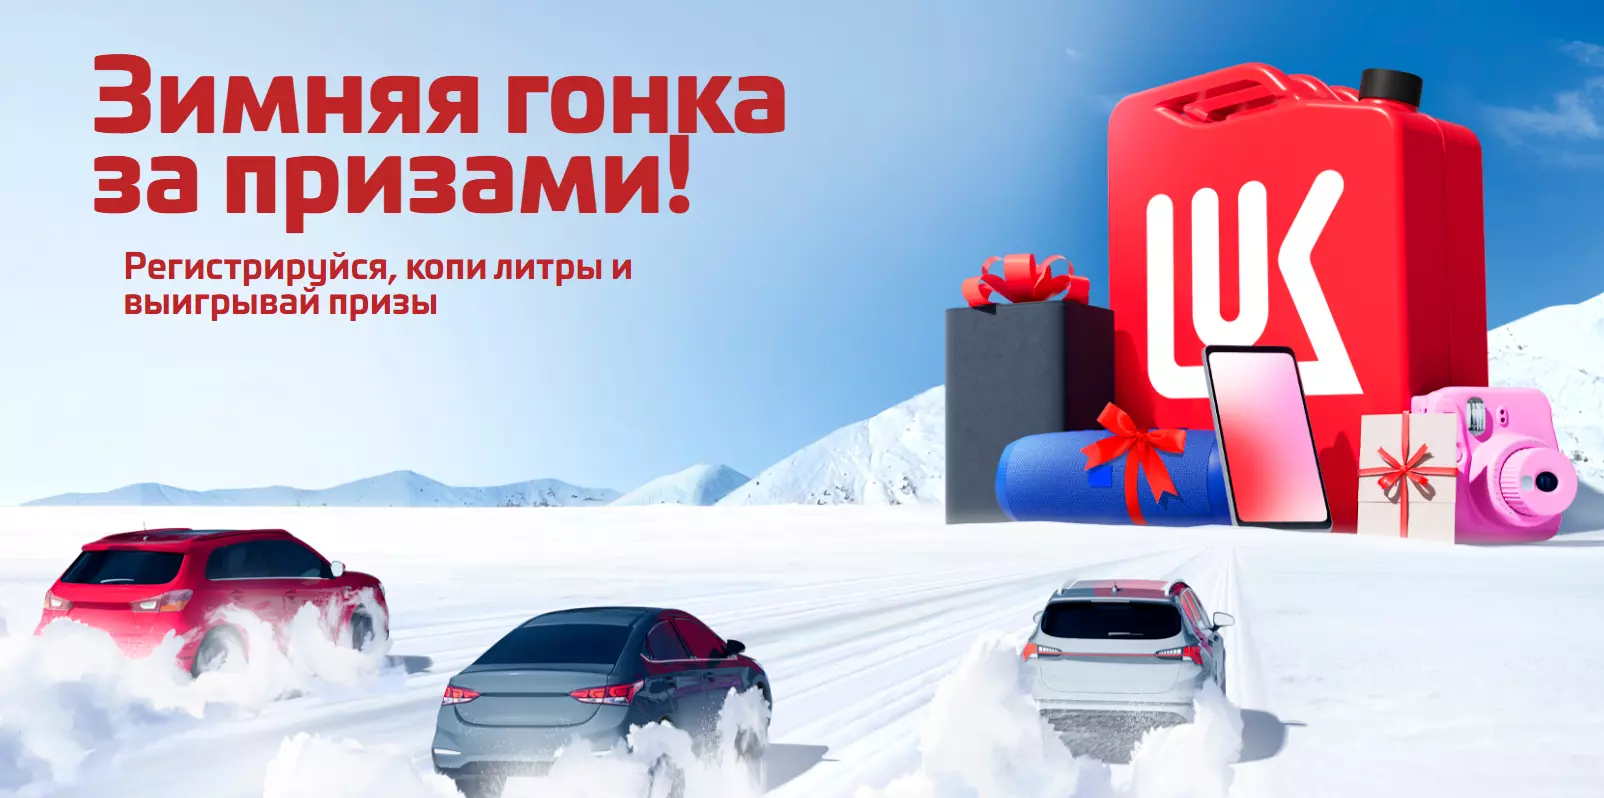 Акция Лукойл: «Зимняя гонка за призами»